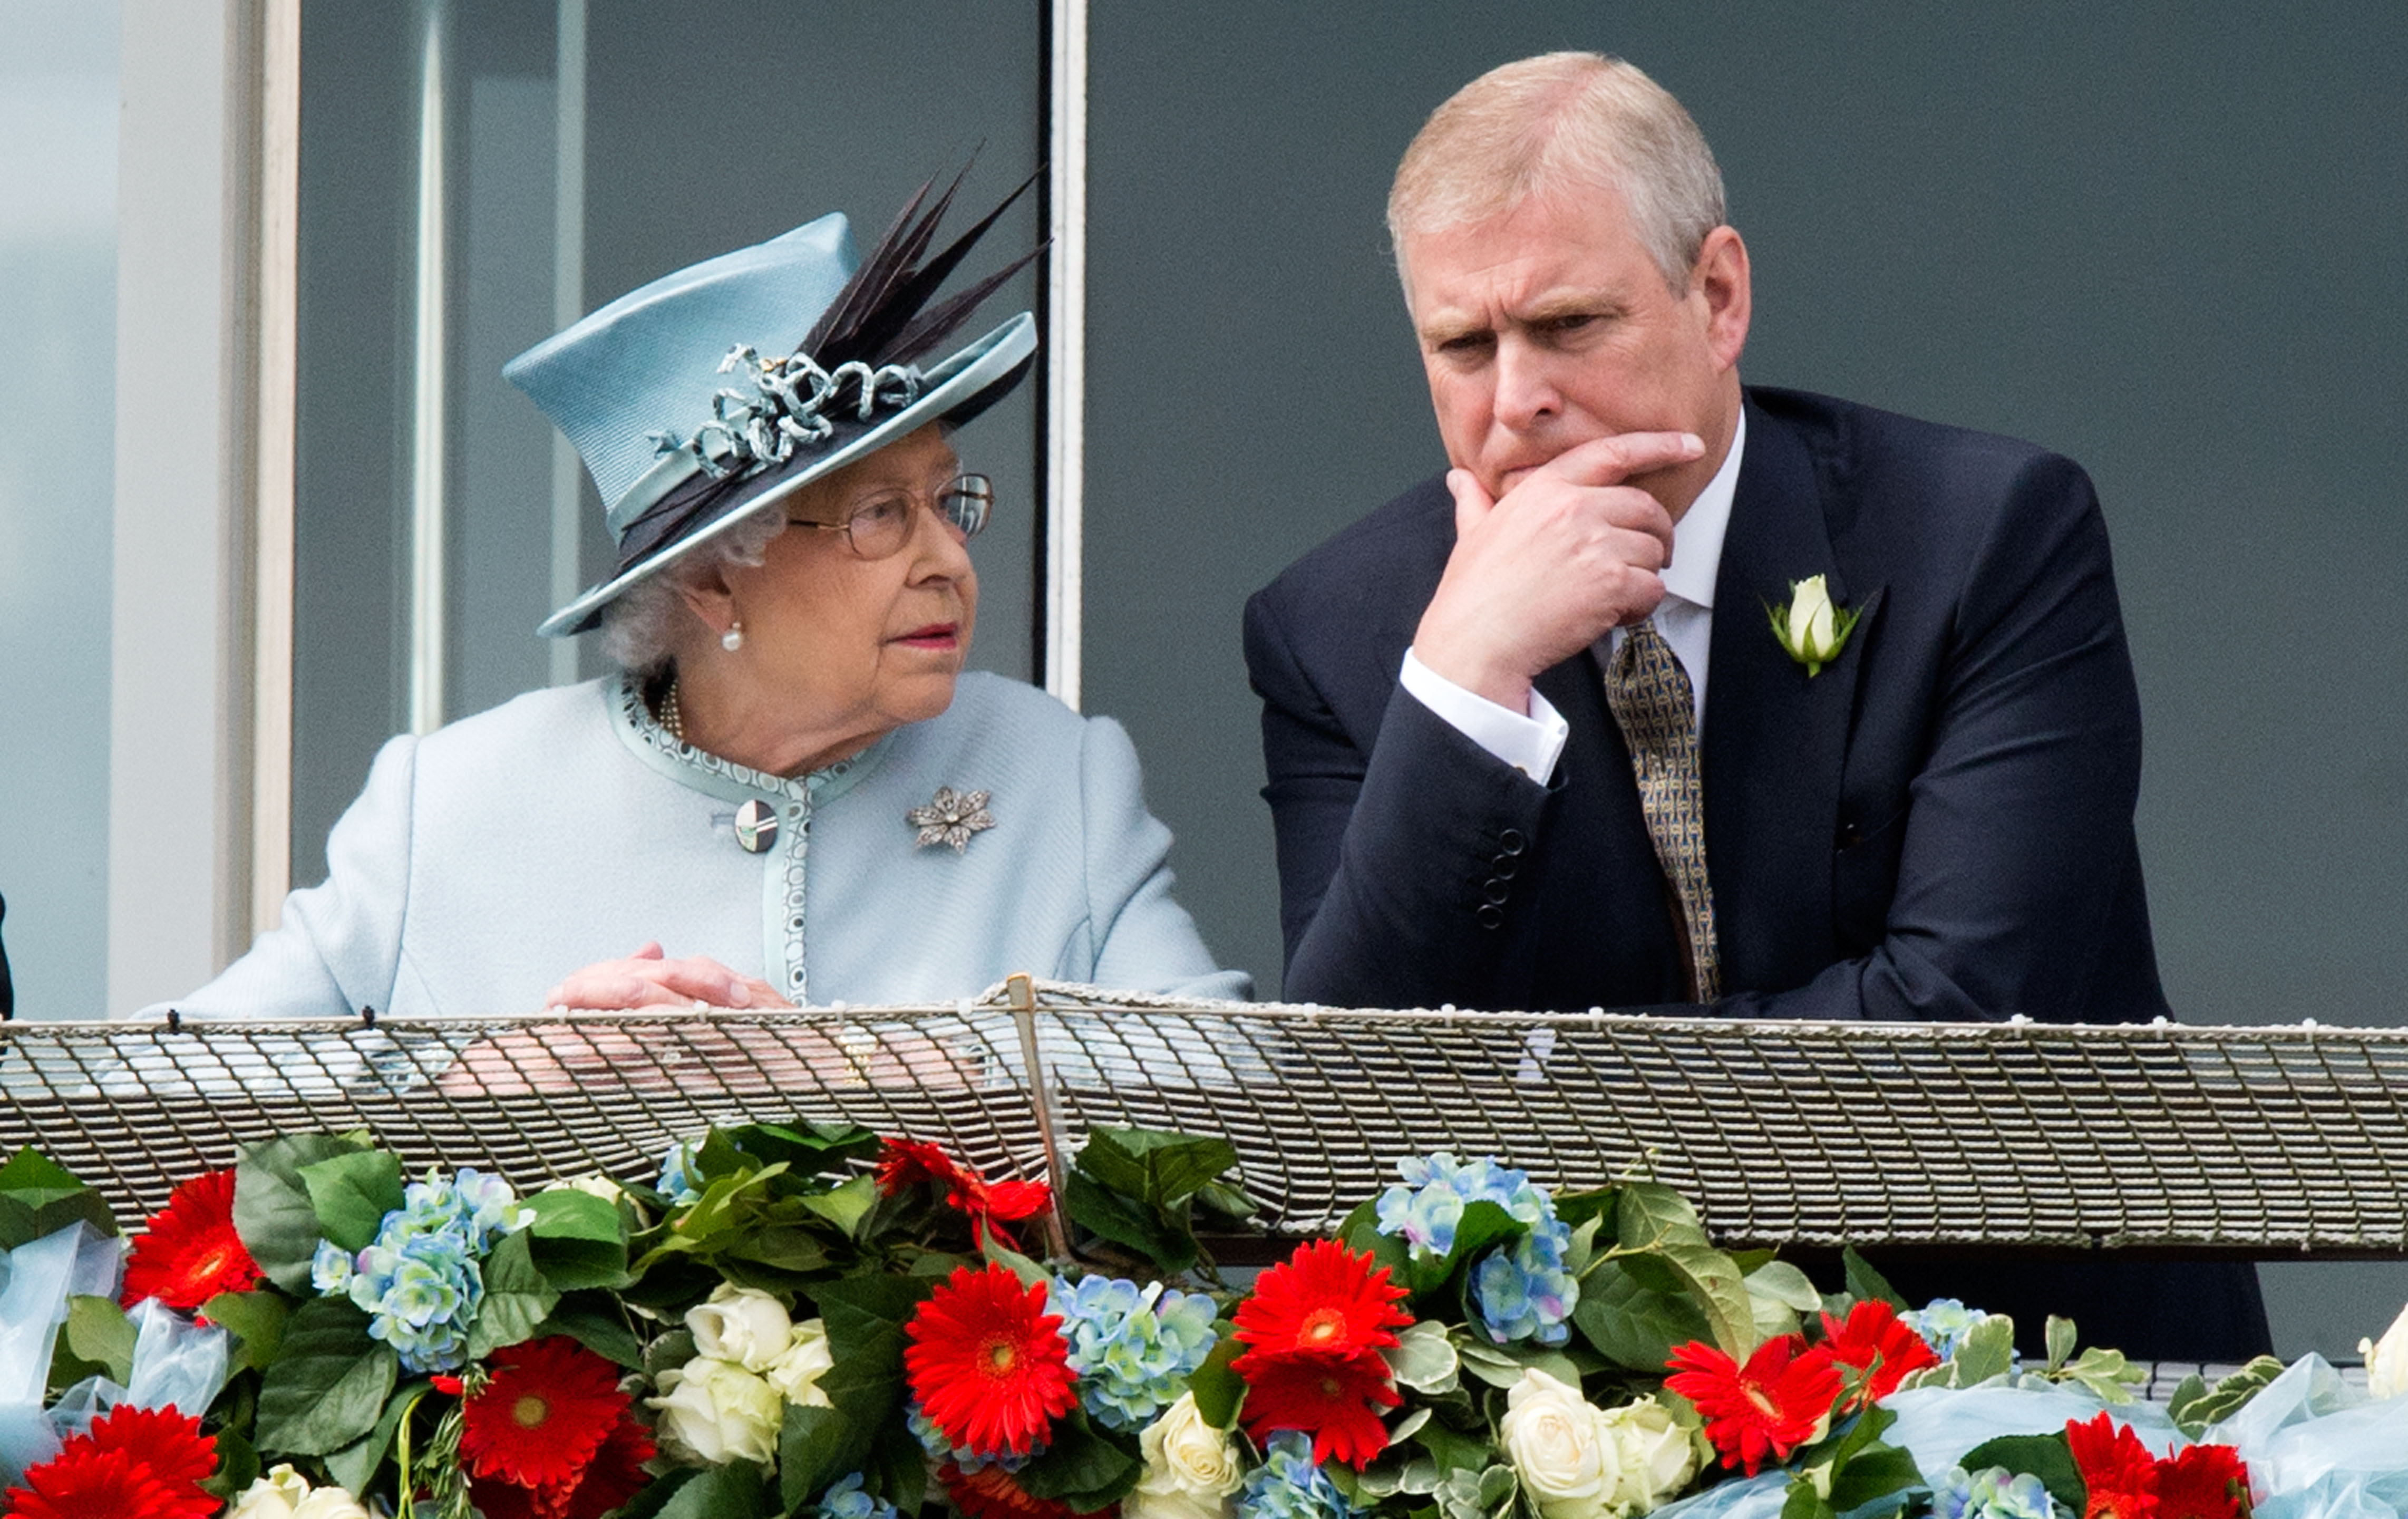 El príncipe Andrew ha estado visitando a la reina todos los días, se afirma